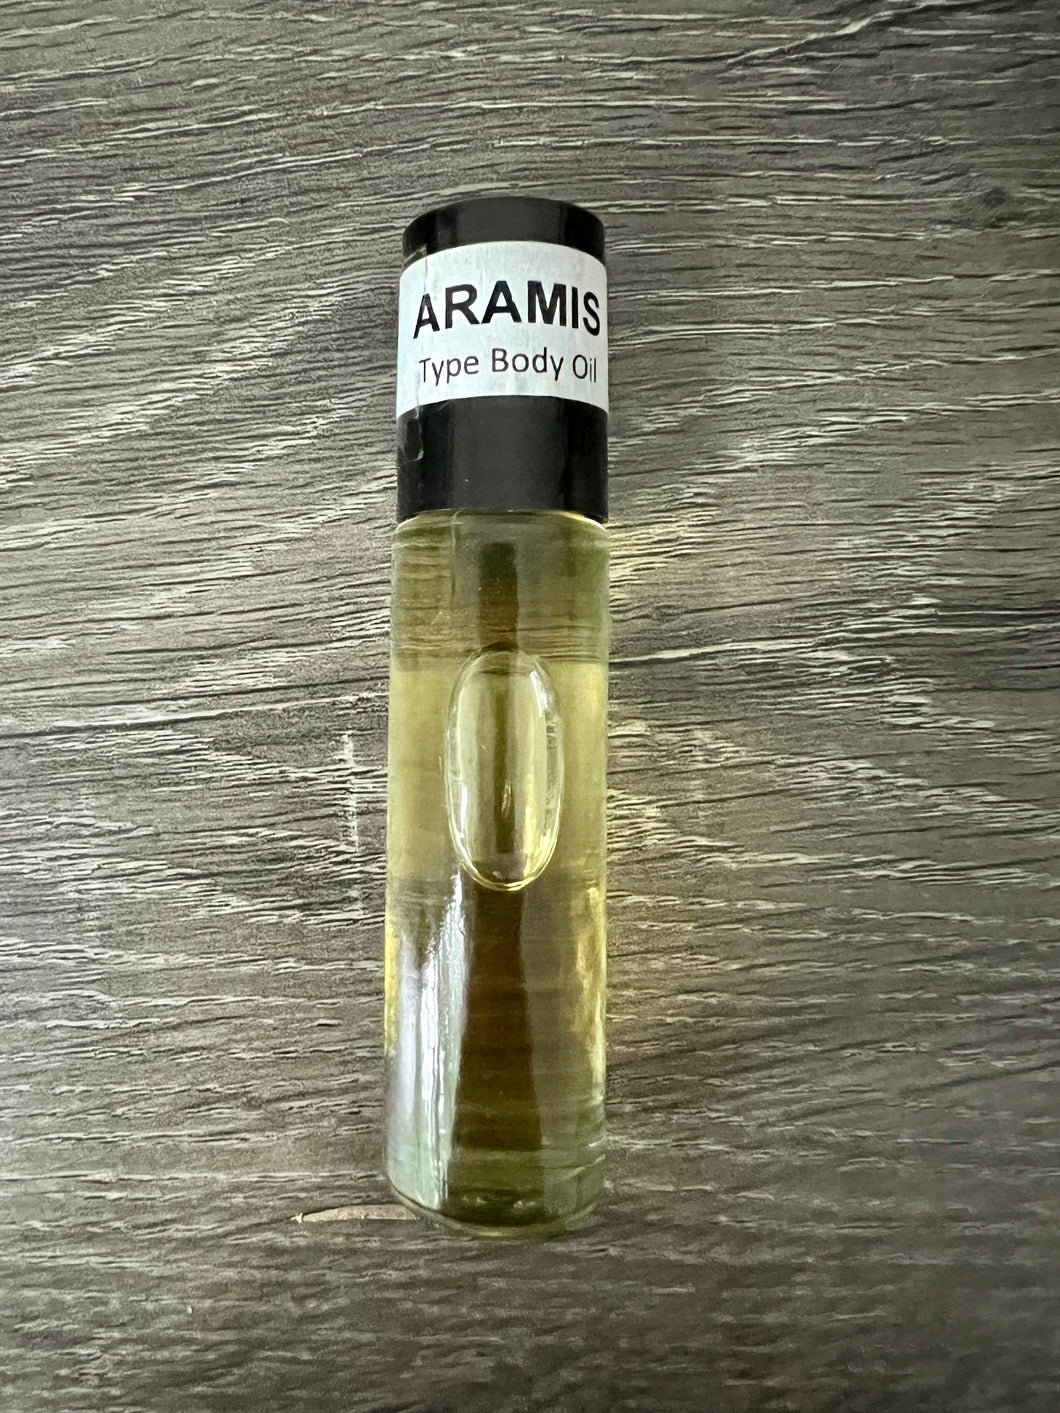 Aramis Body Oil